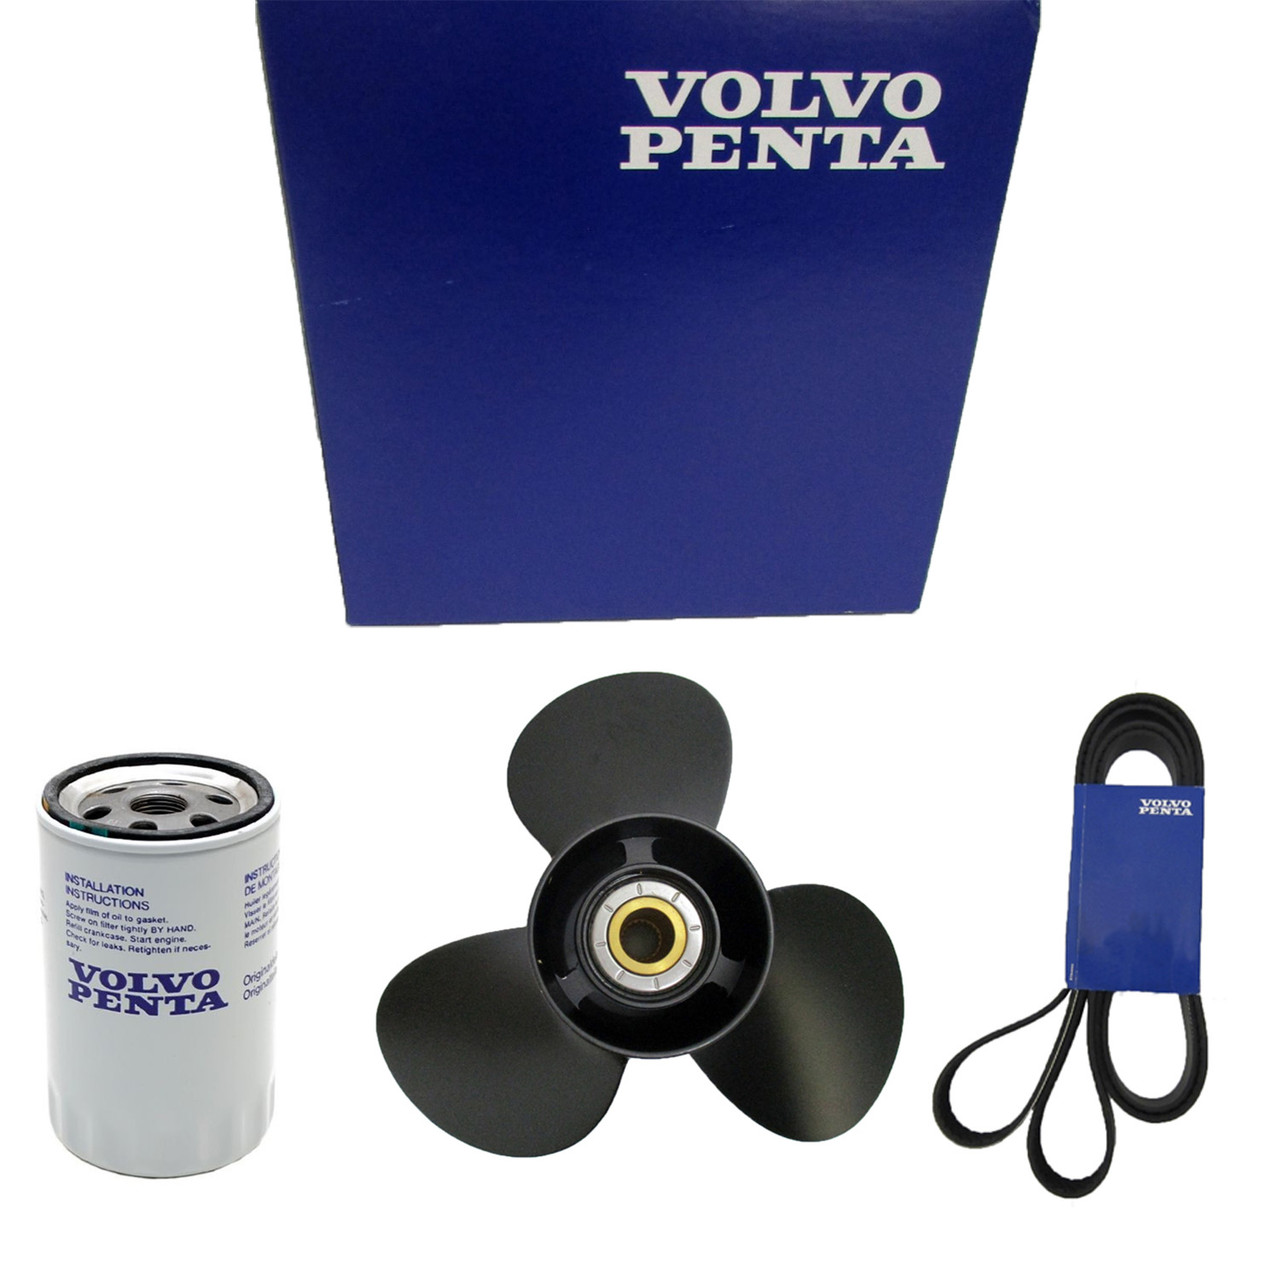 Volvo Penta New OEM Tachometer Kit, 21511178